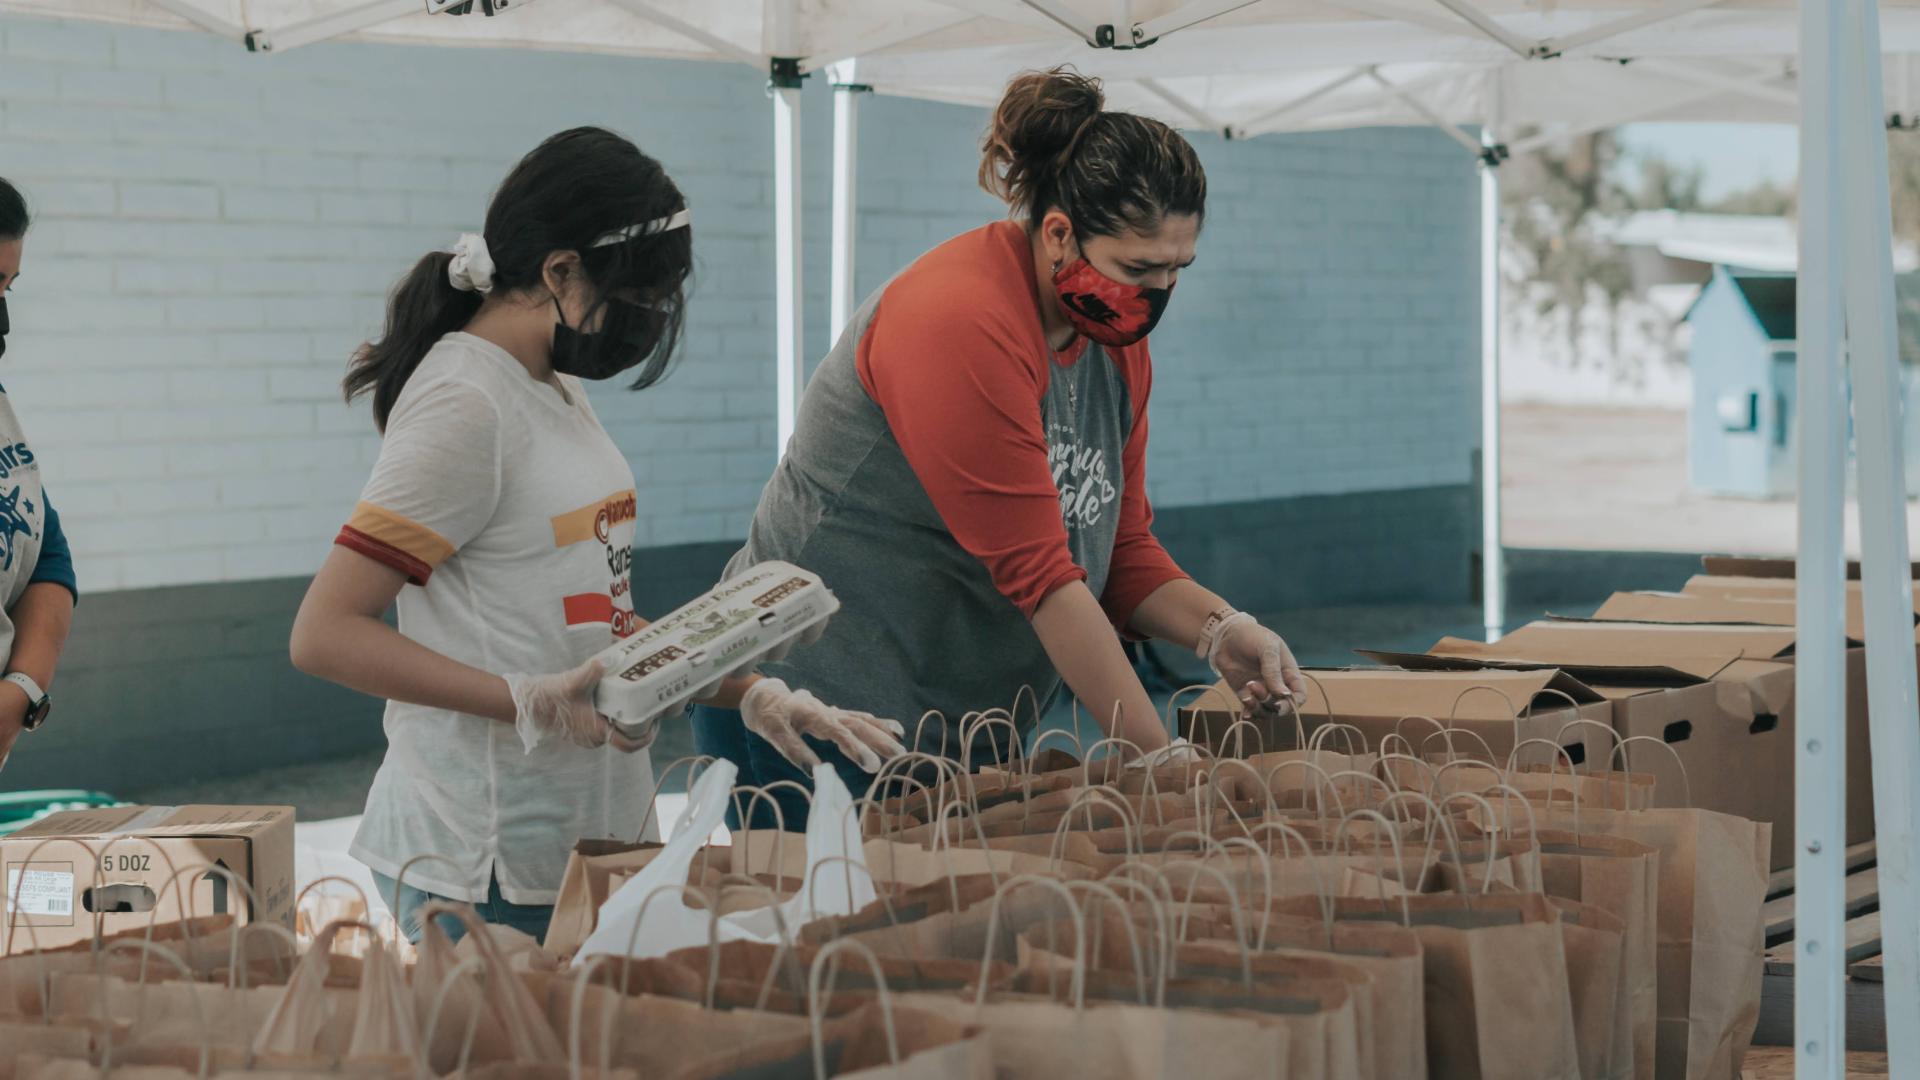 Two volunteers help sort food into paper bags